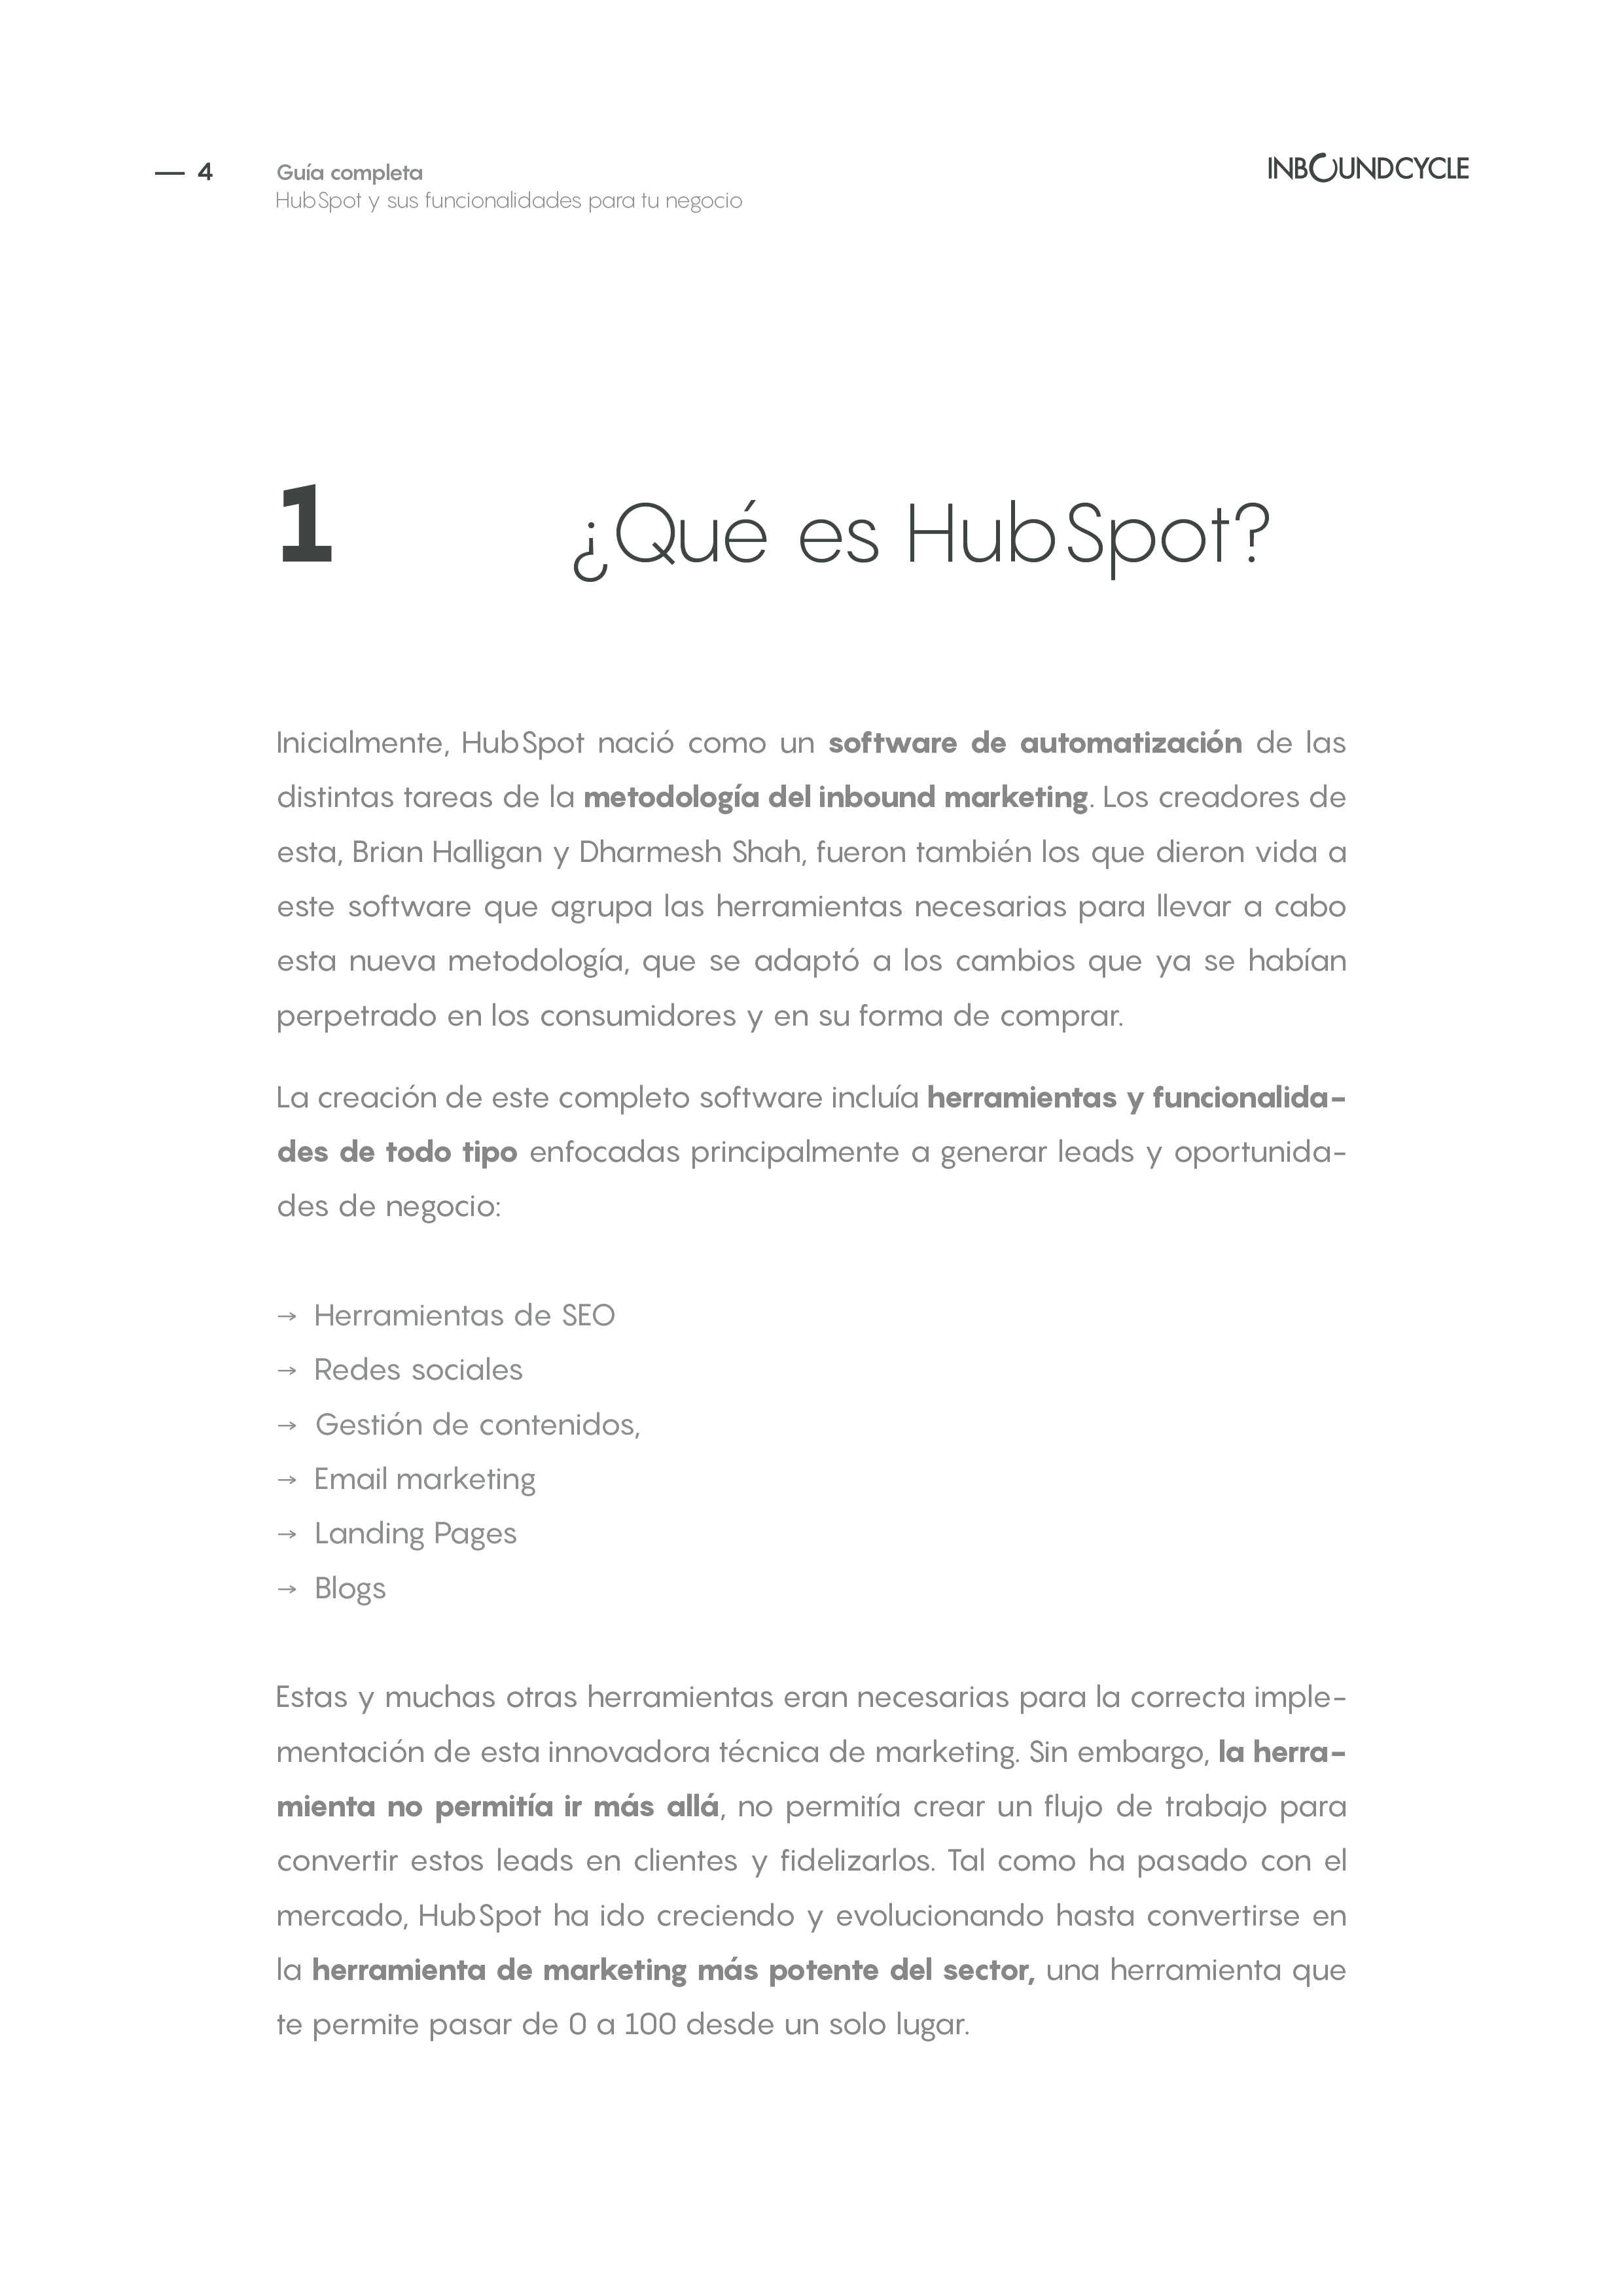 ICC - eBook - Guía completa sobre HubSpot y sus funcionalidades para tu negocio4